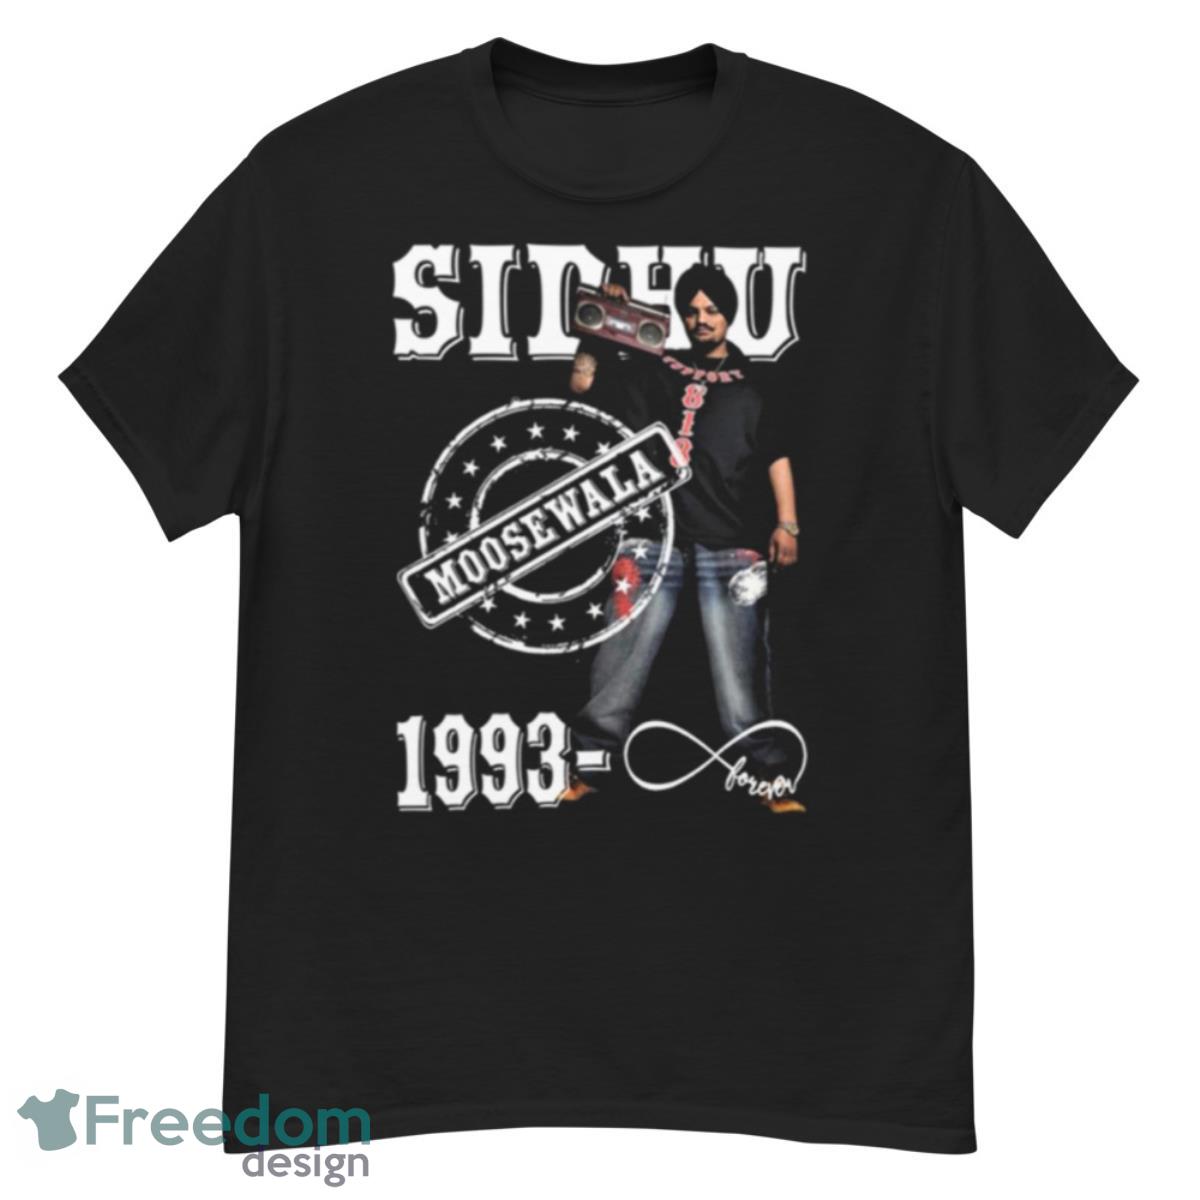 Sidhu Moose Wala 1993 Legend shirt - G500 Men’s Classic T-Shirt